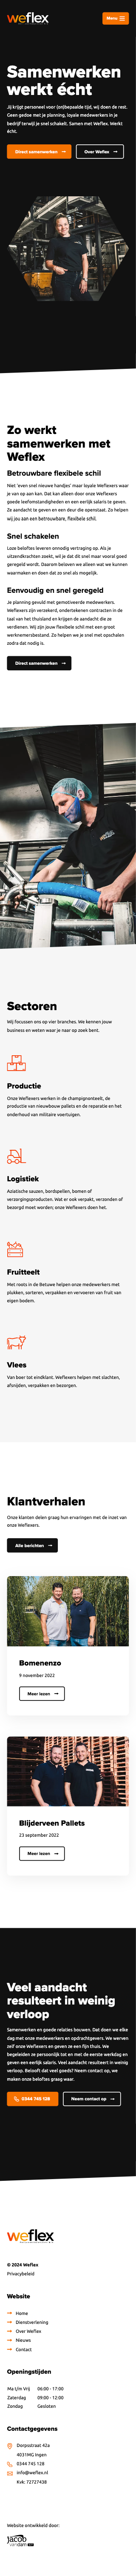 www.weflex.nl-mobiel